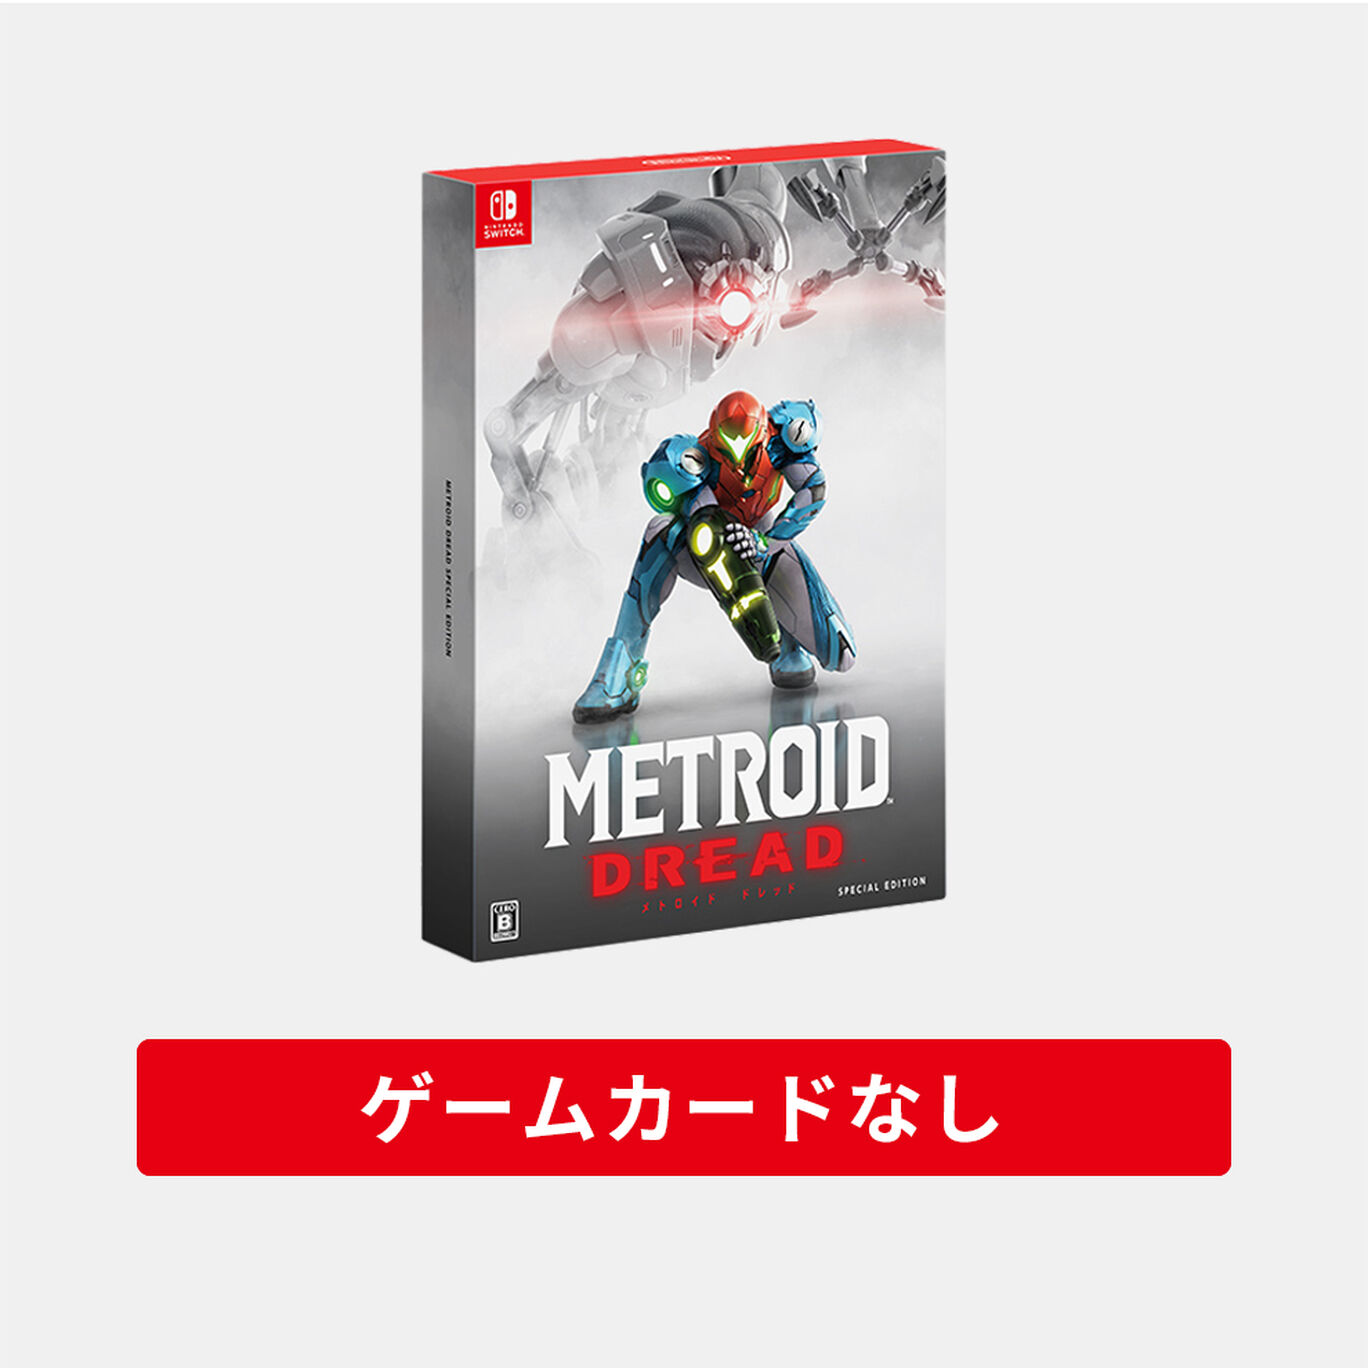 メトロイド ドレッド スペシャルエディション ゲームカードなし 特典のみ My Nintendo Store マイニンテンドーストア